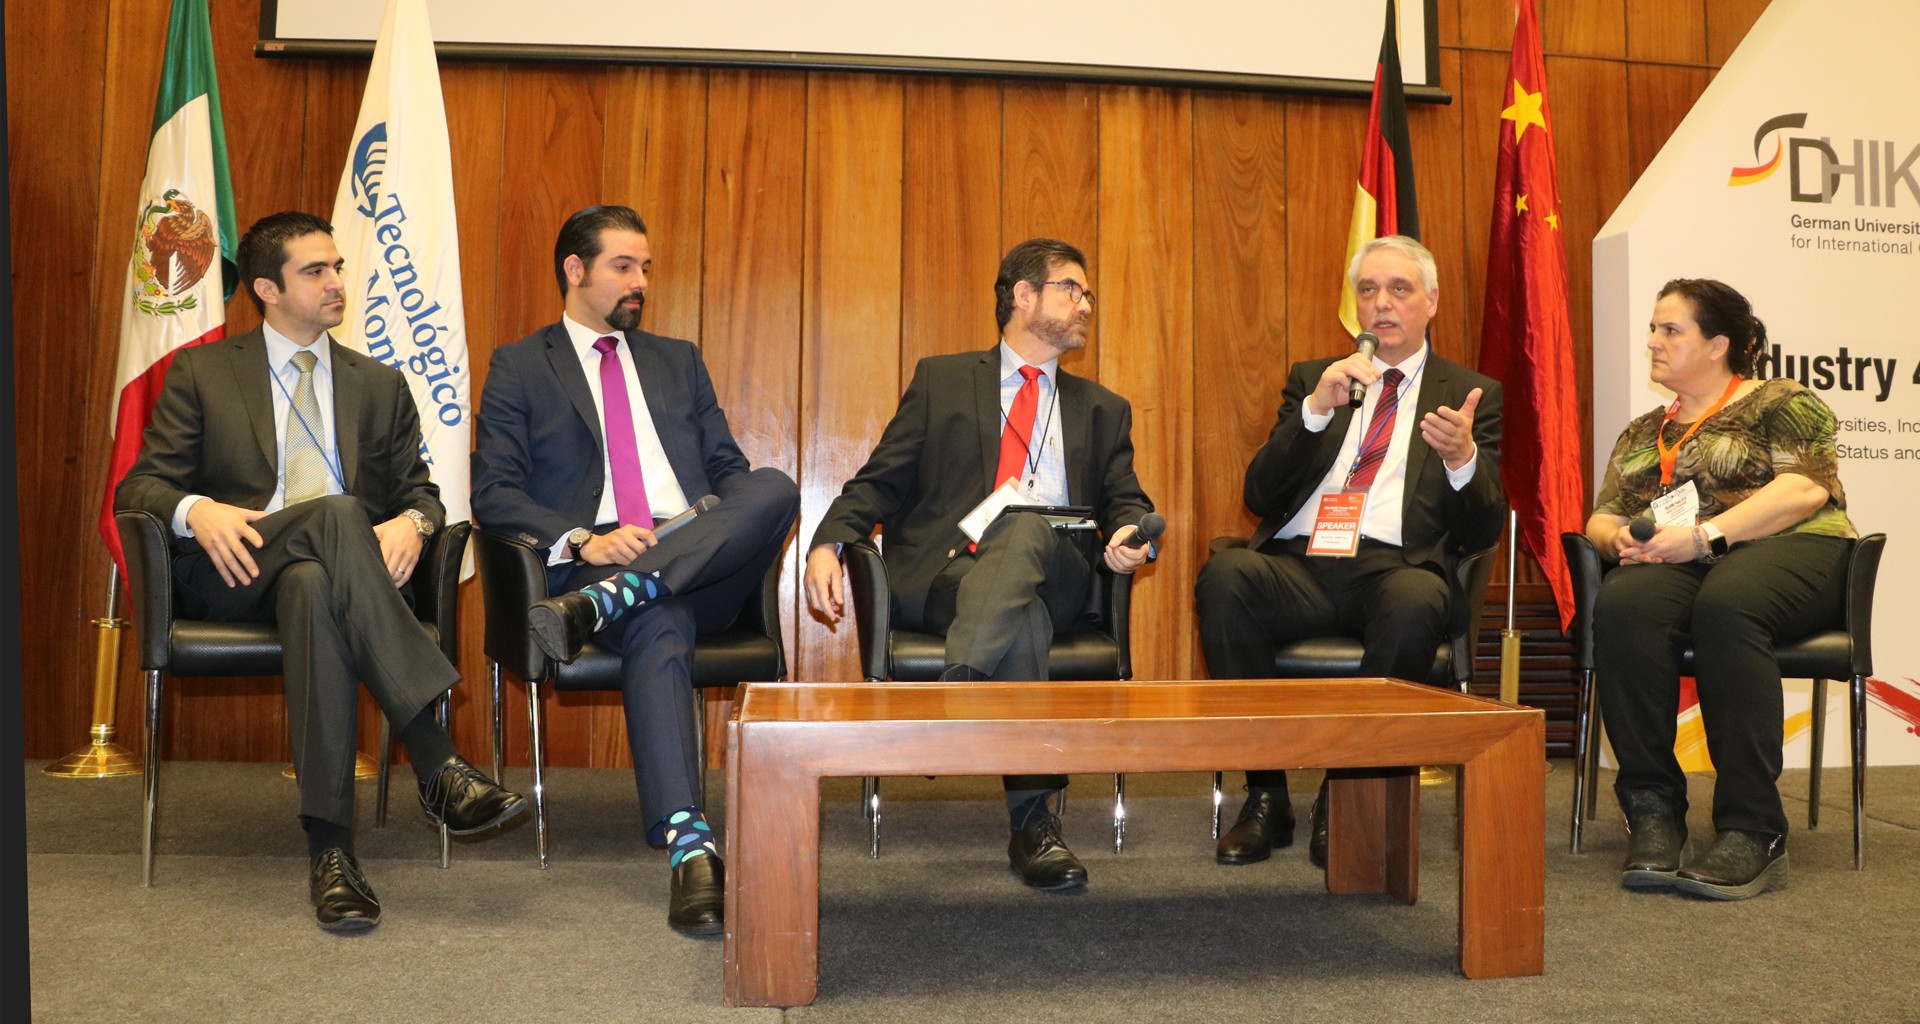 Panel entre expertos de México y Alemania en el Foro Tec-DHIK